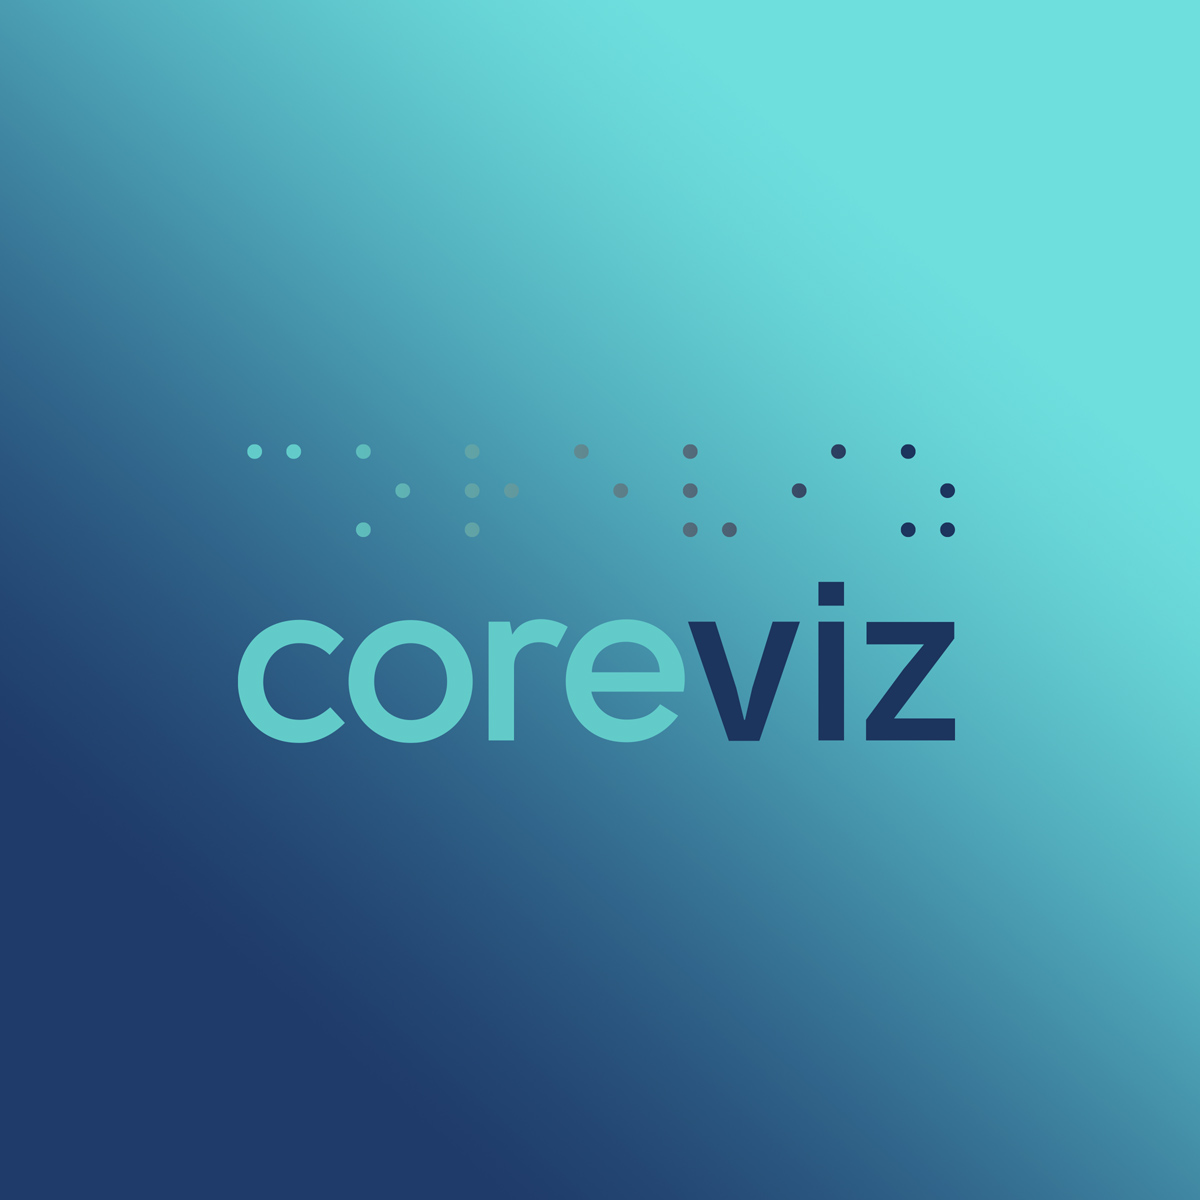 Coreviz Logo & Branding